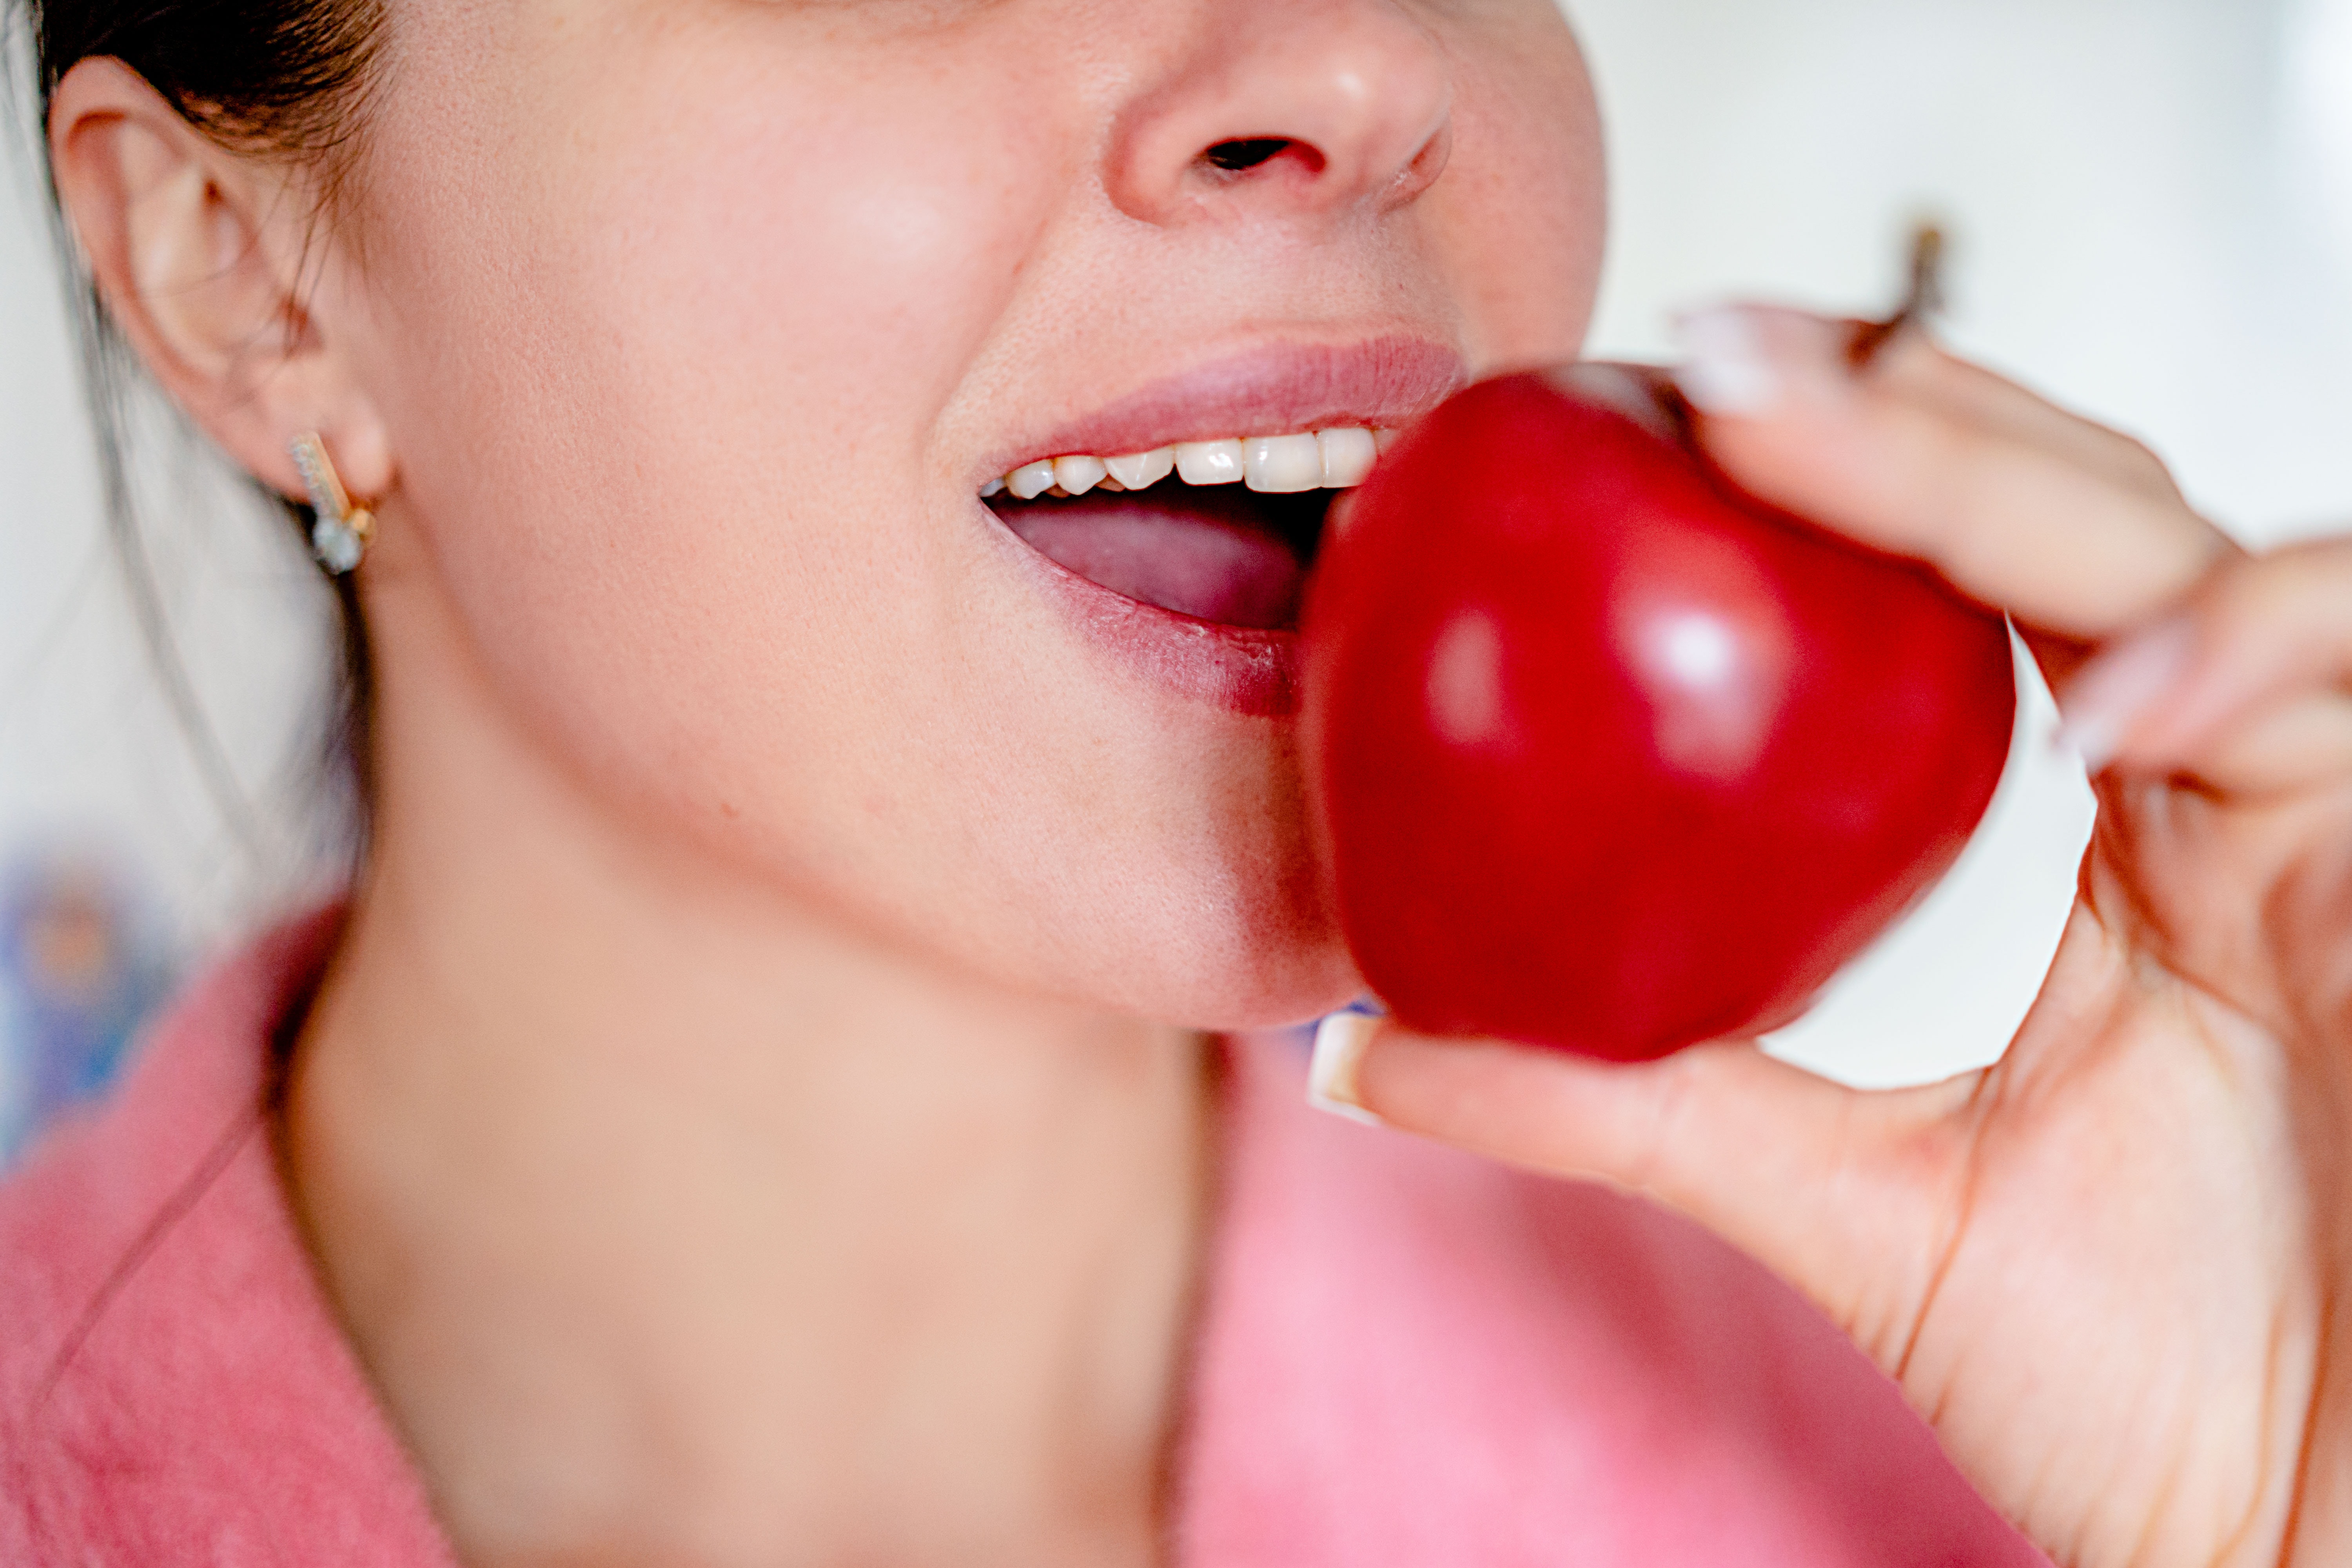 रोज एक सफरचंद खाल्ल्याने डॉक्टरांकडे जाण्याची गरज भासत नाही, असे अनेकदा सांगितले जाते.